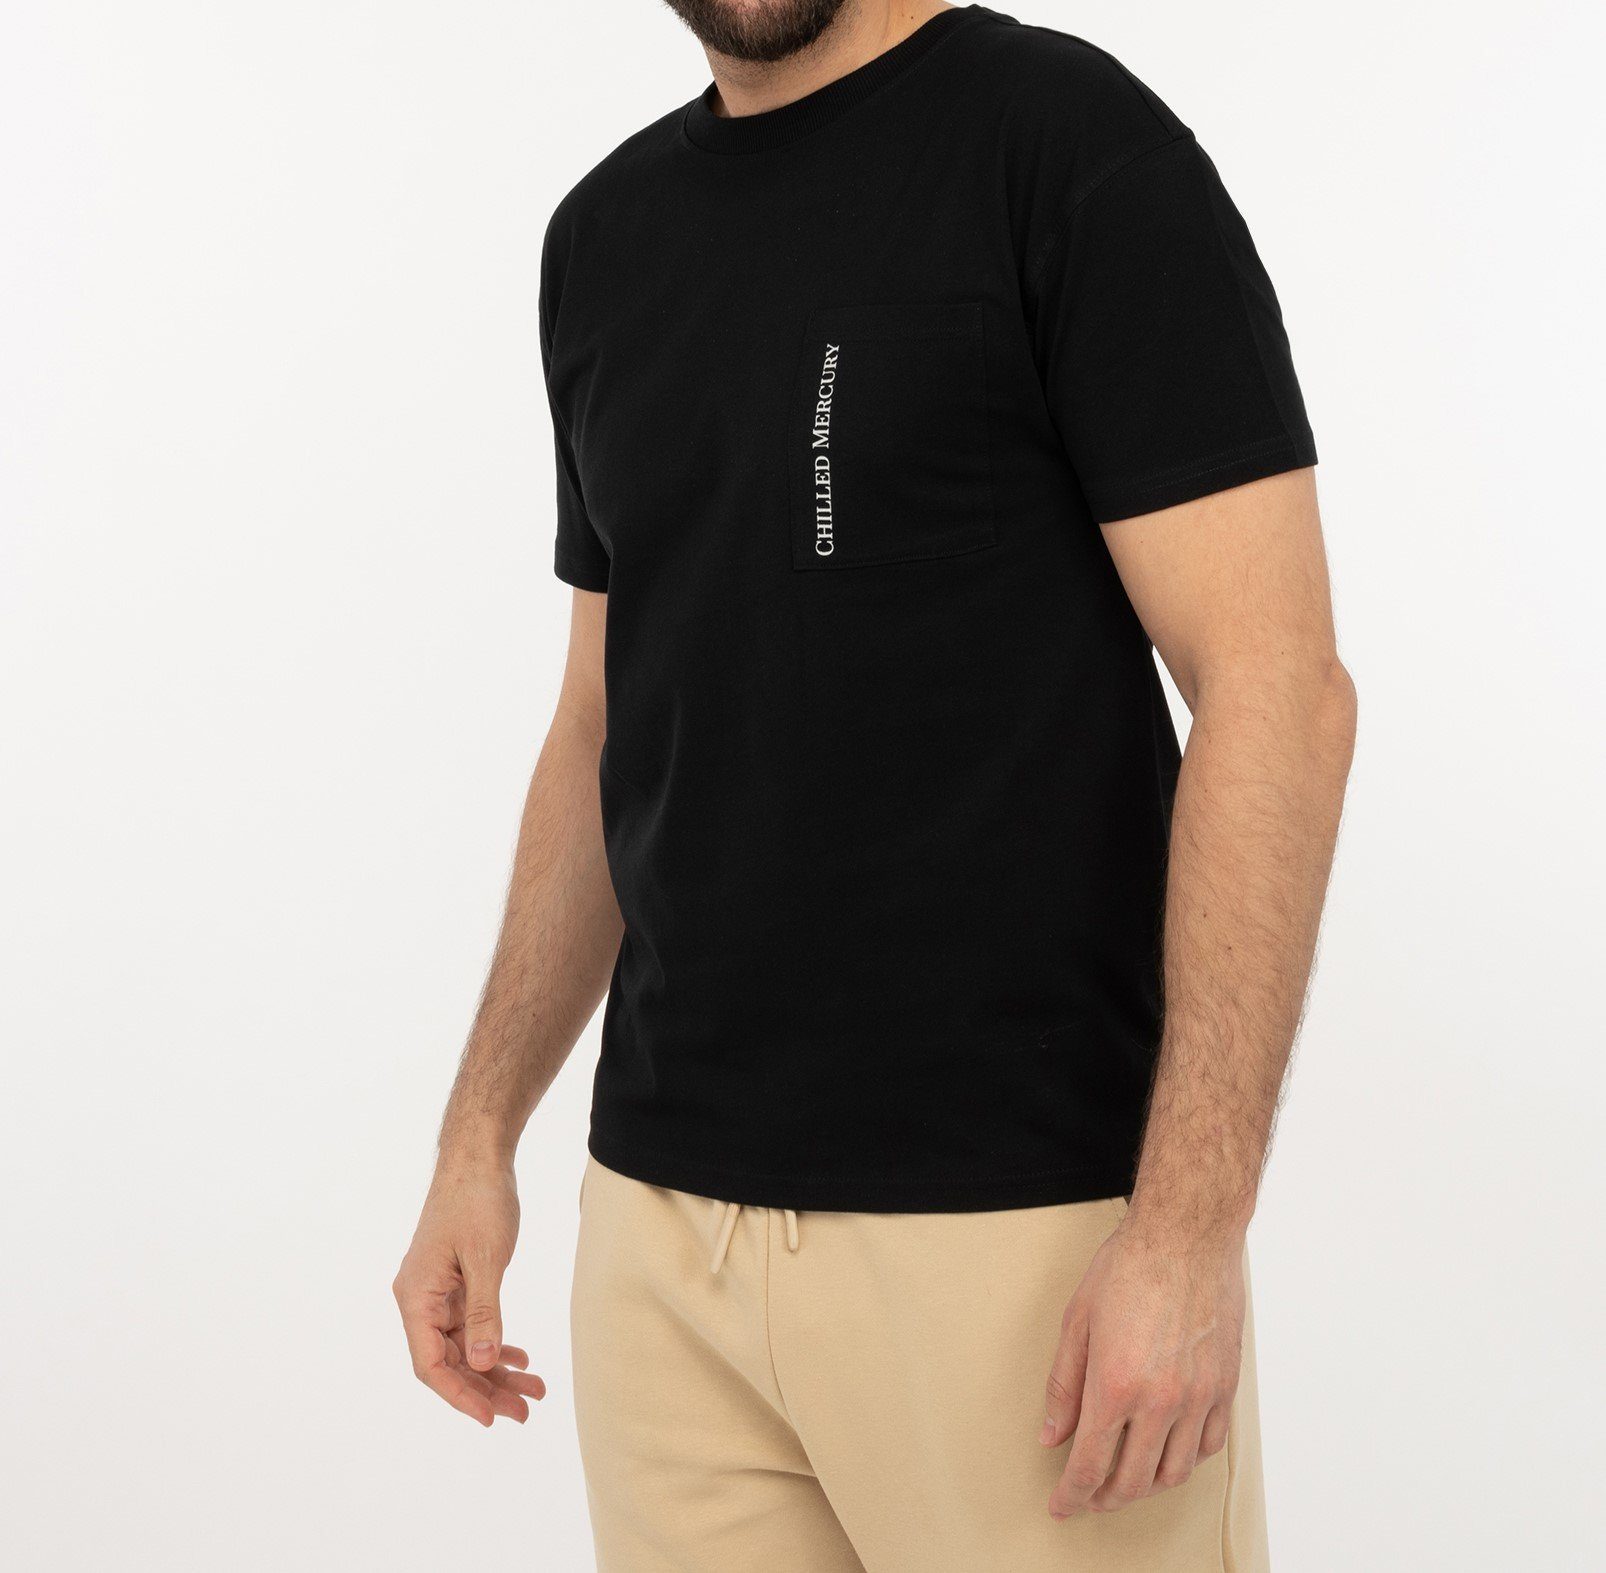 Chilled Mercury T-Shirt Baumwolle Freizeit mit Shirt/ Rundhals Brusttasche Schwarz